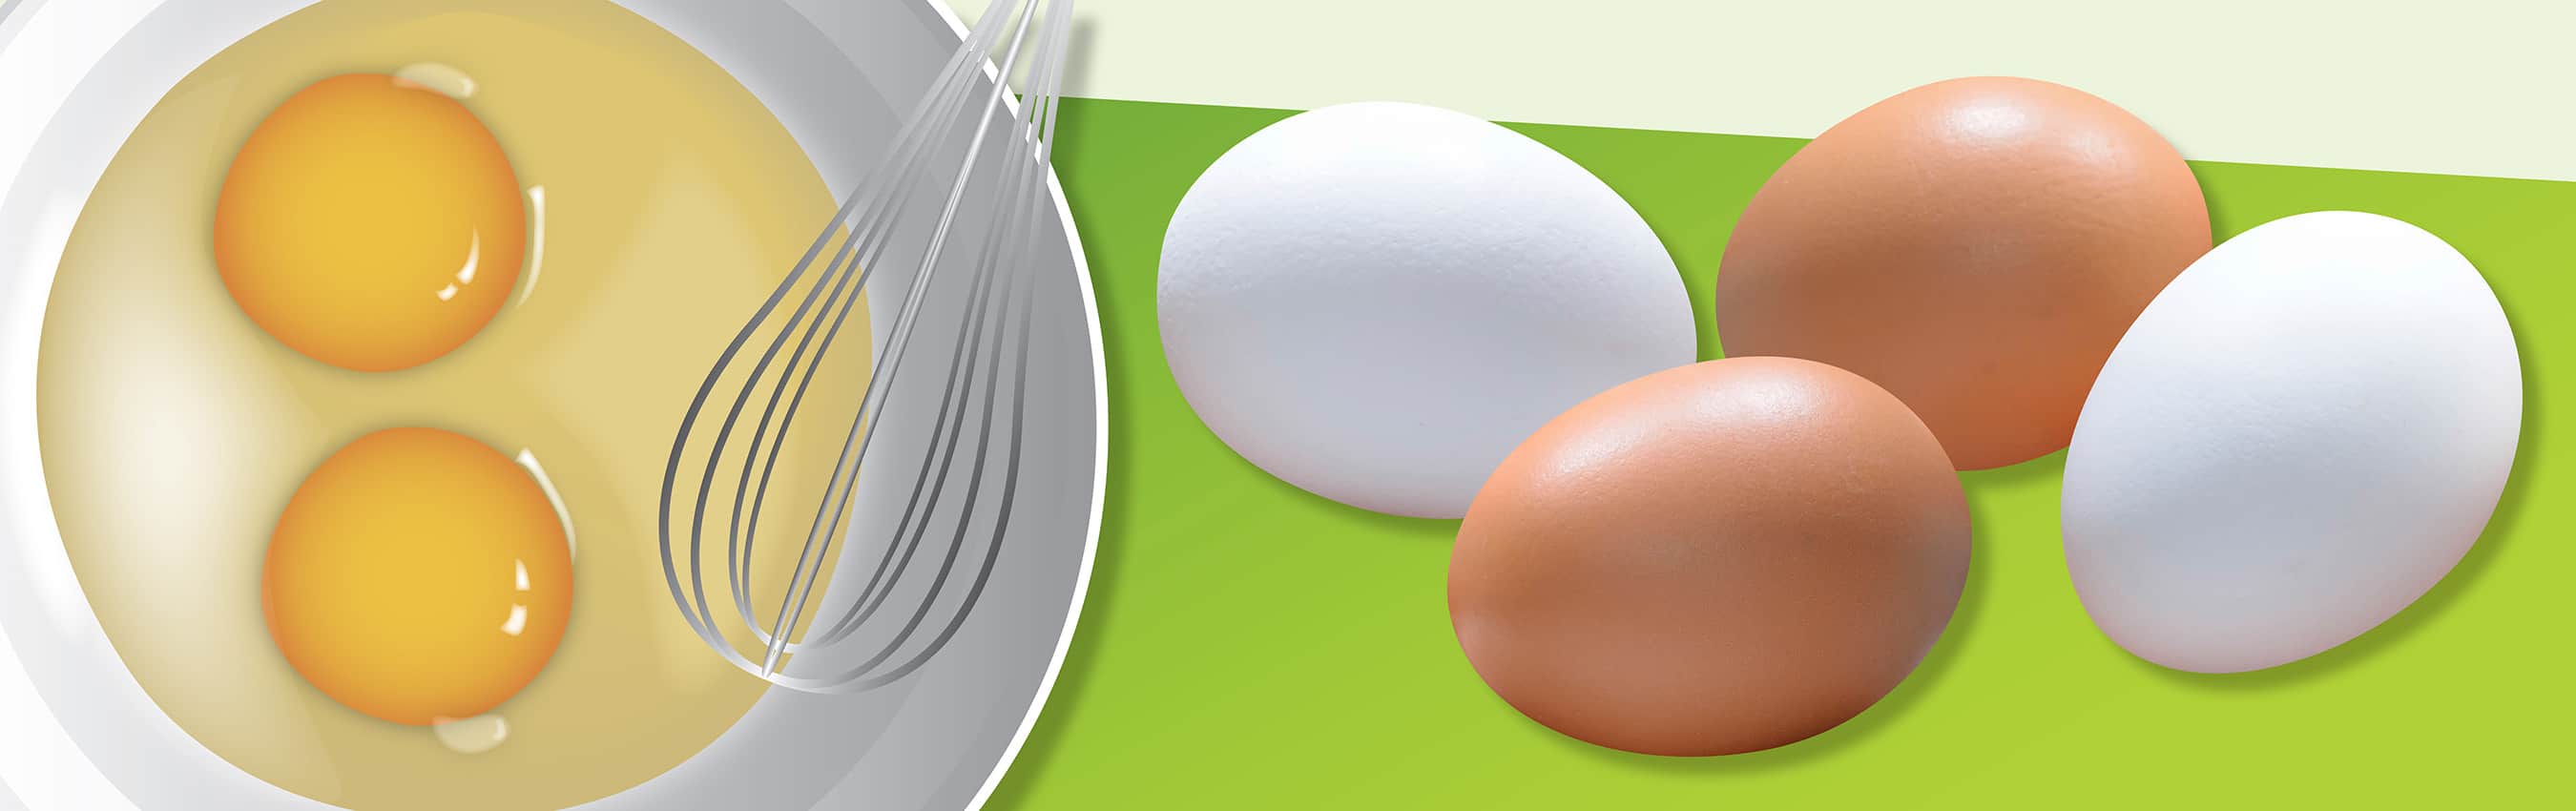 Protege tu salud con estos 5 consejos al cocinar huevos